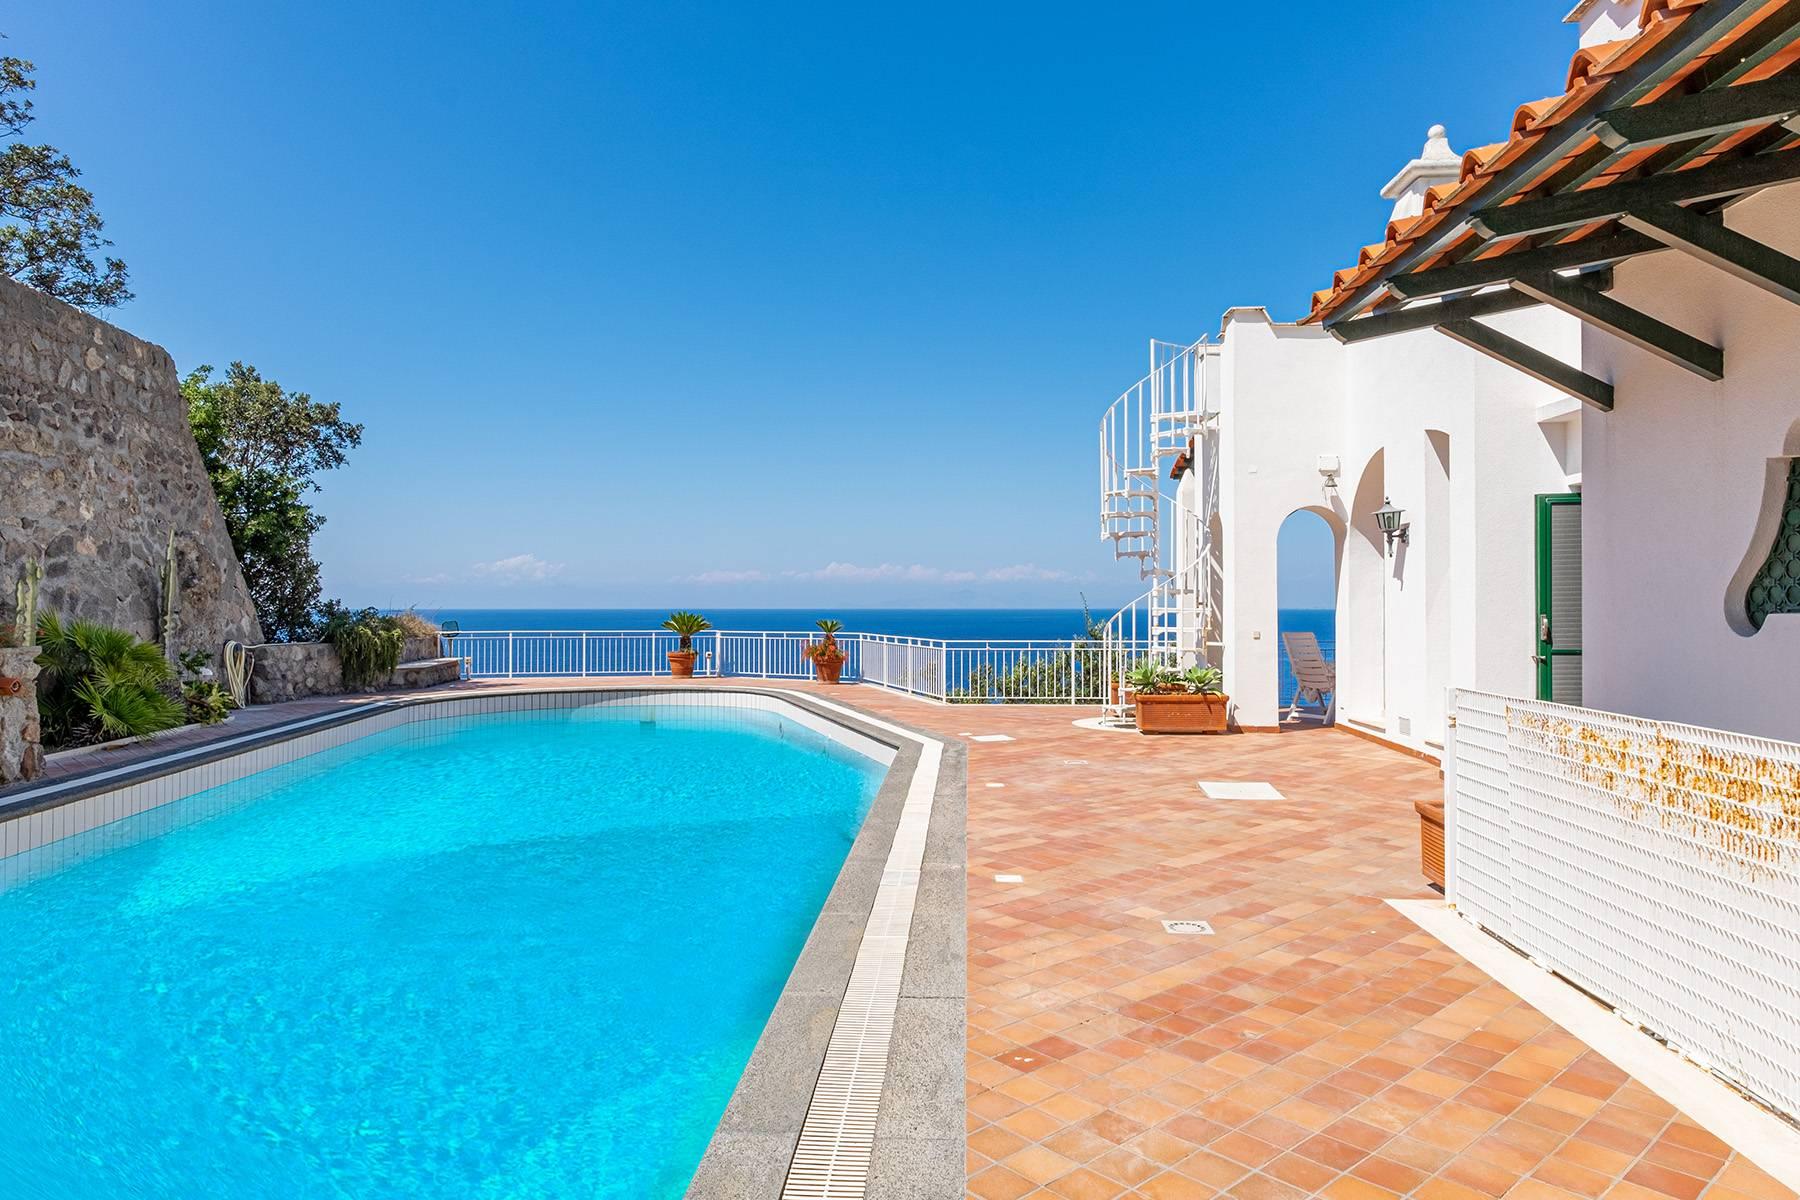 Villa mediterranea con piscina e discesa a mare privata - 9